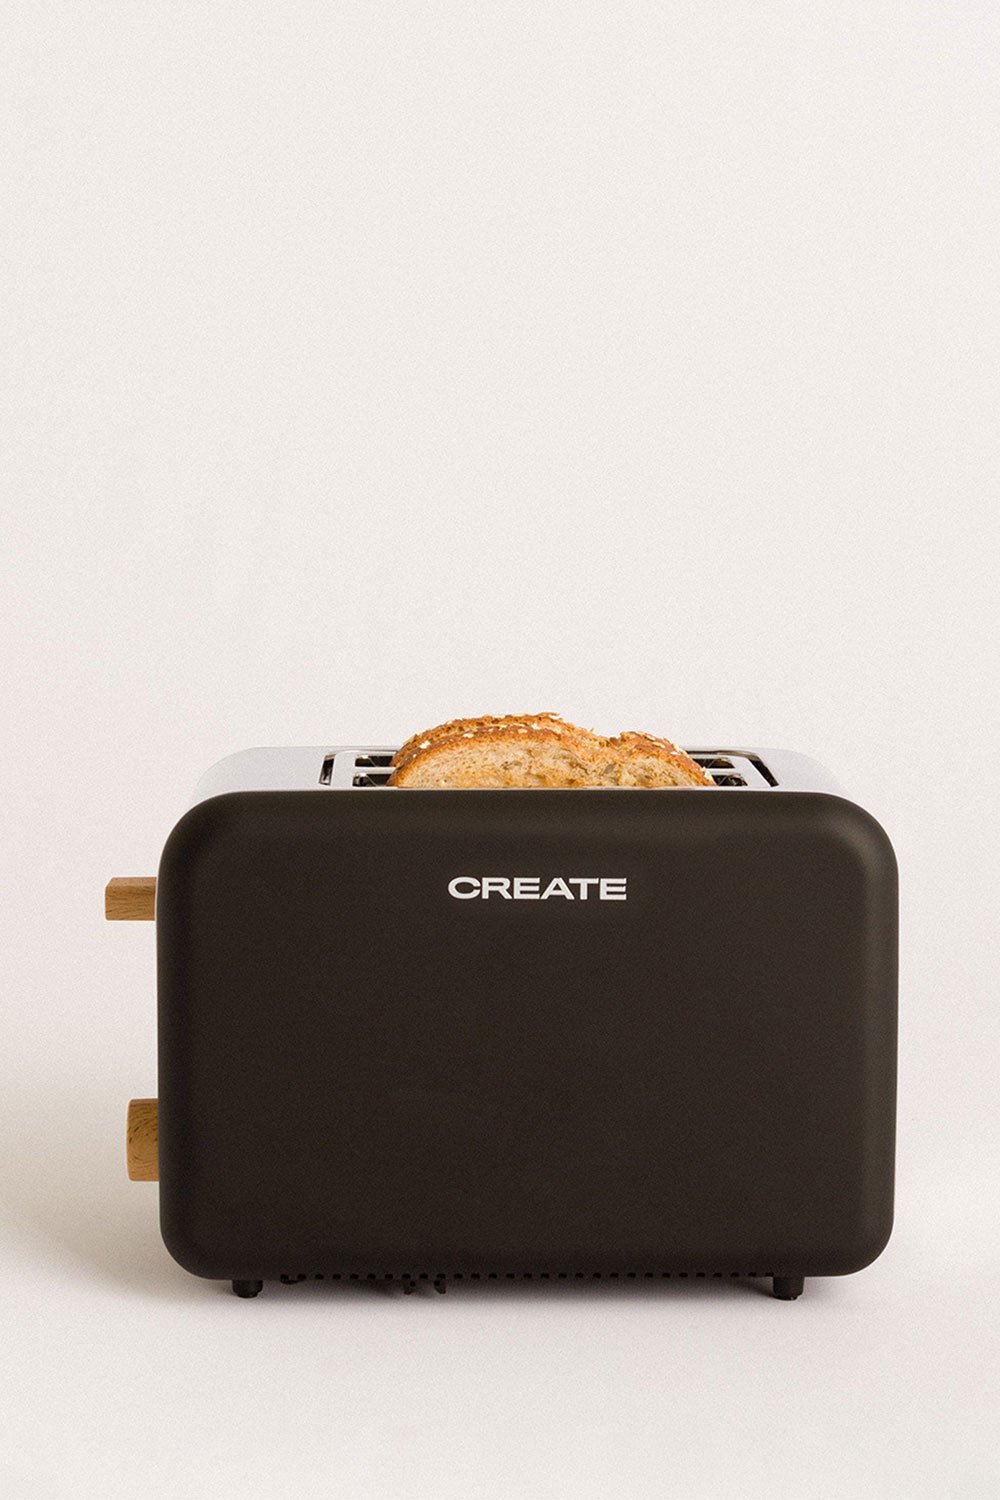 CREATE - TOAST - Tostapane per fette larghe, immagine della galleria 1